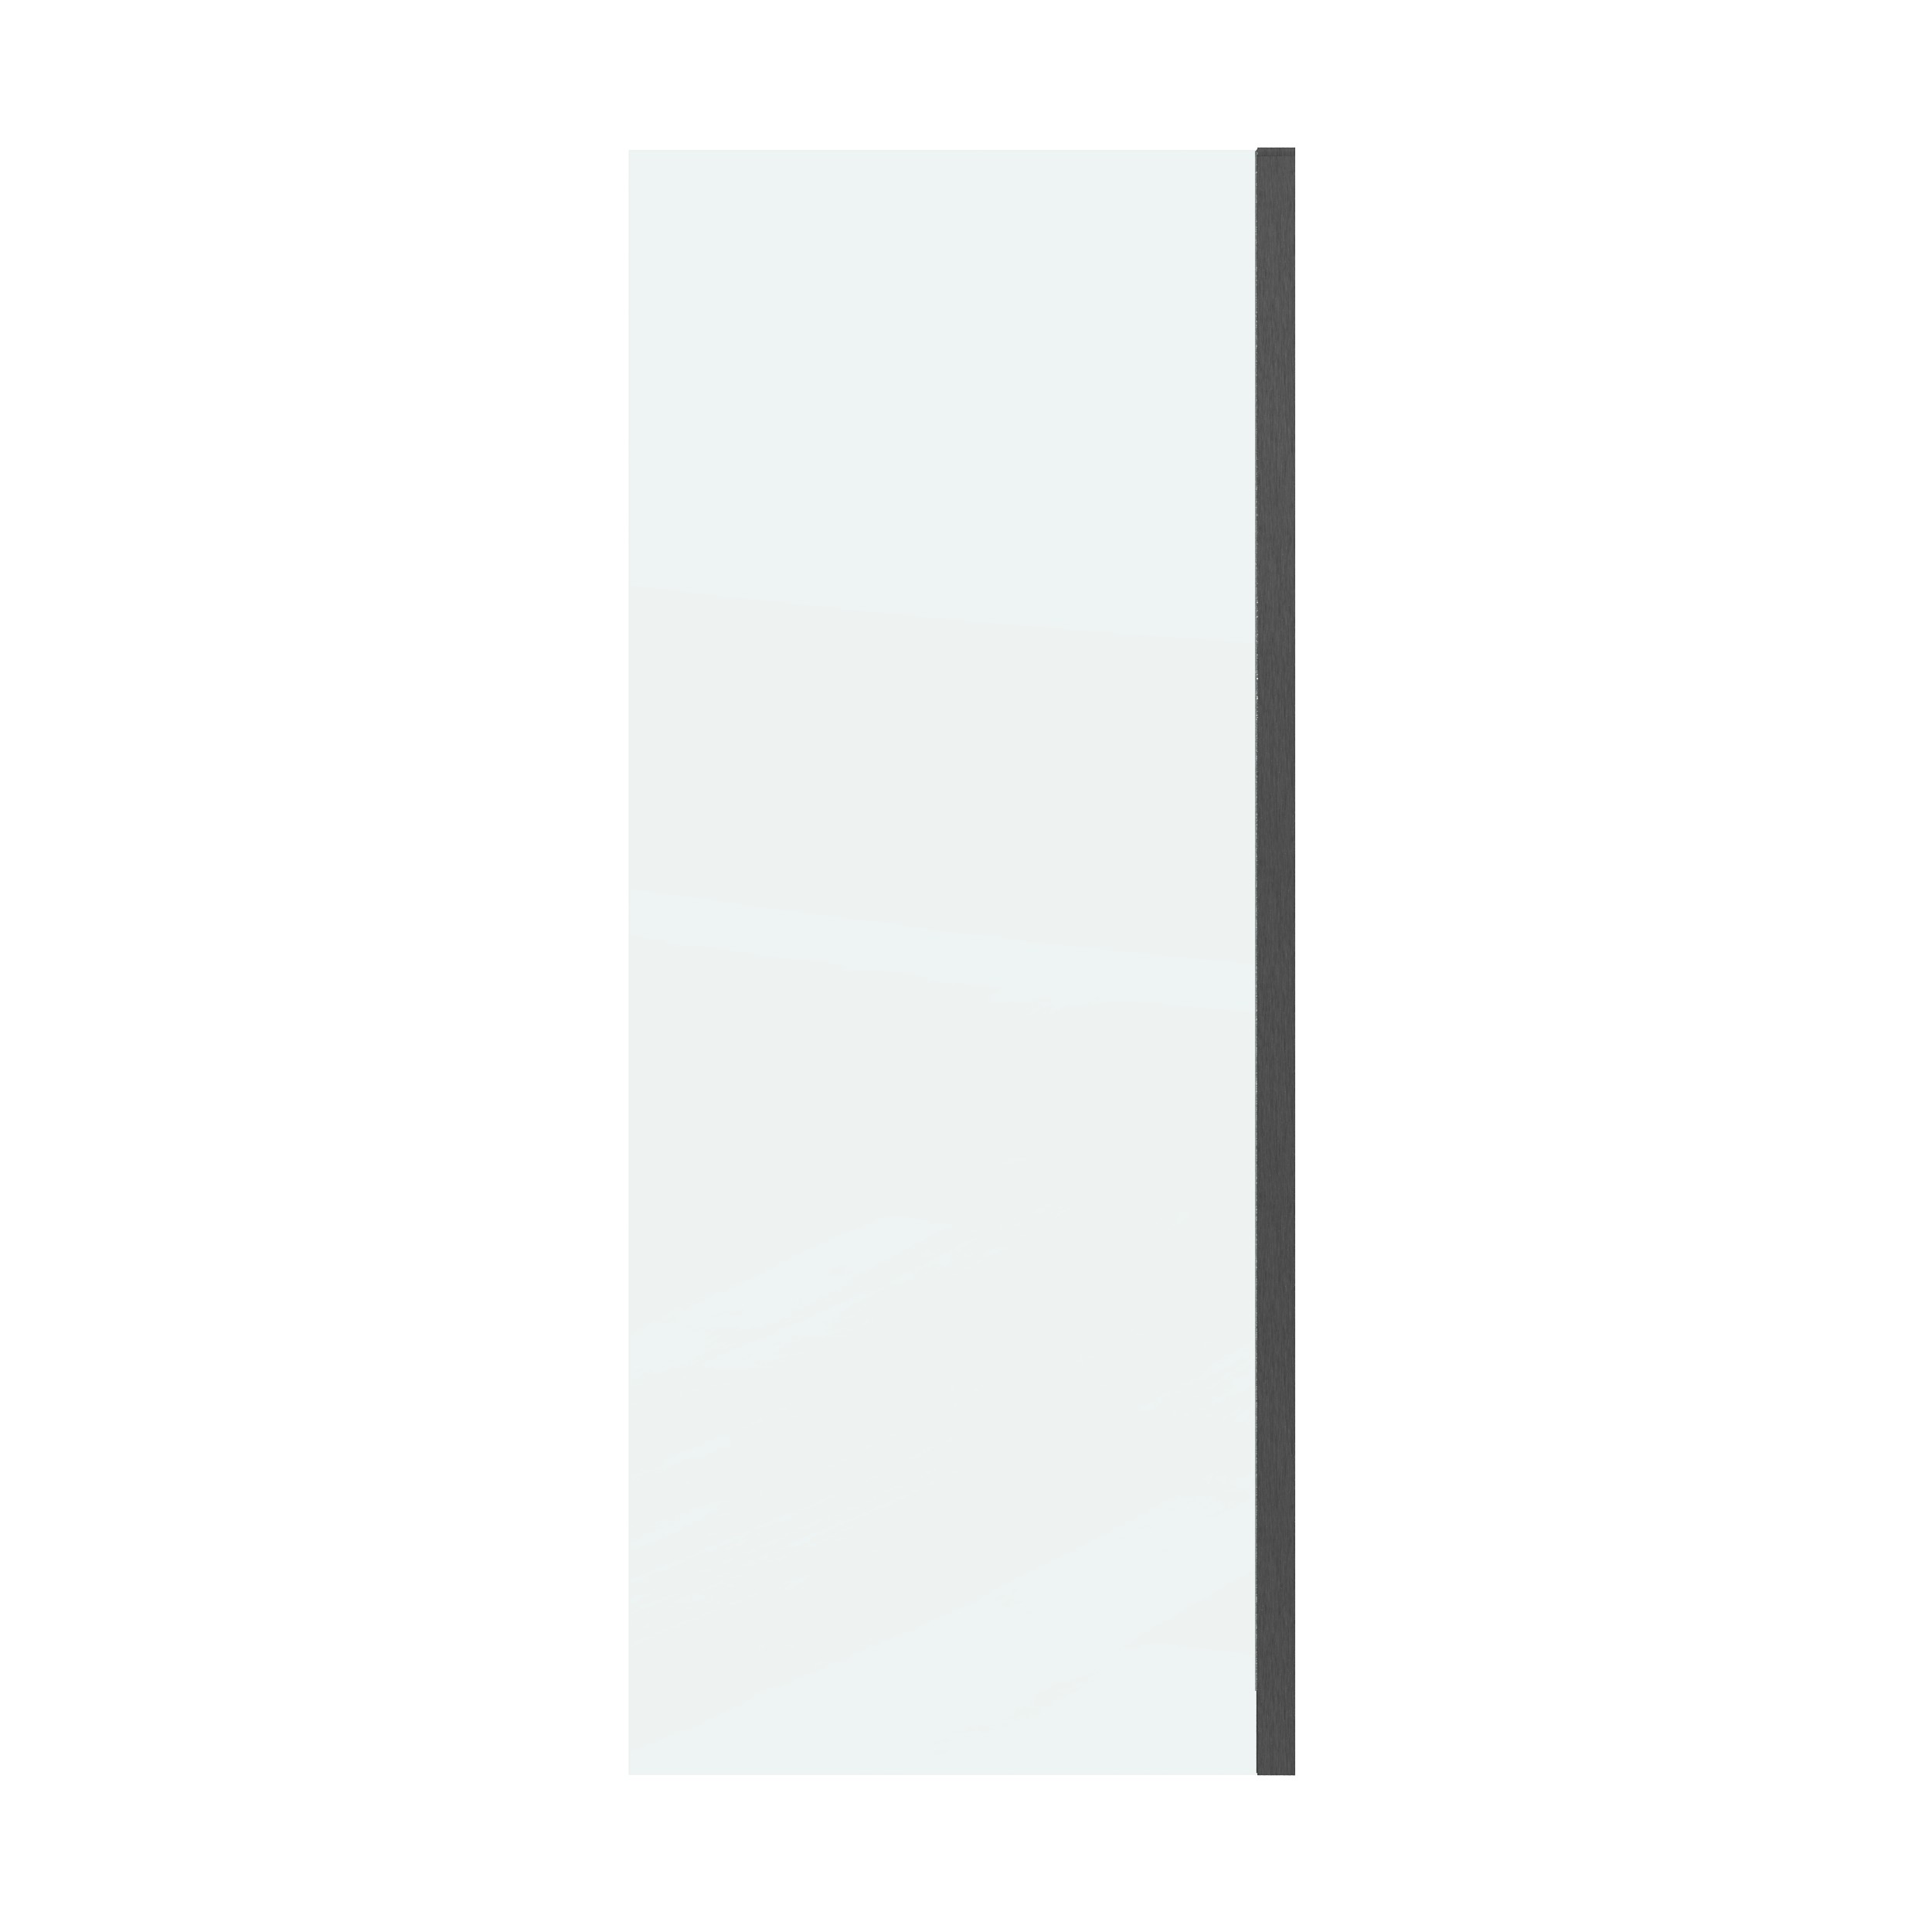 Боковая стенка Grossman Classic 80x195 200.K33.04.80.42.00 стекло прозрачное, профиль графит